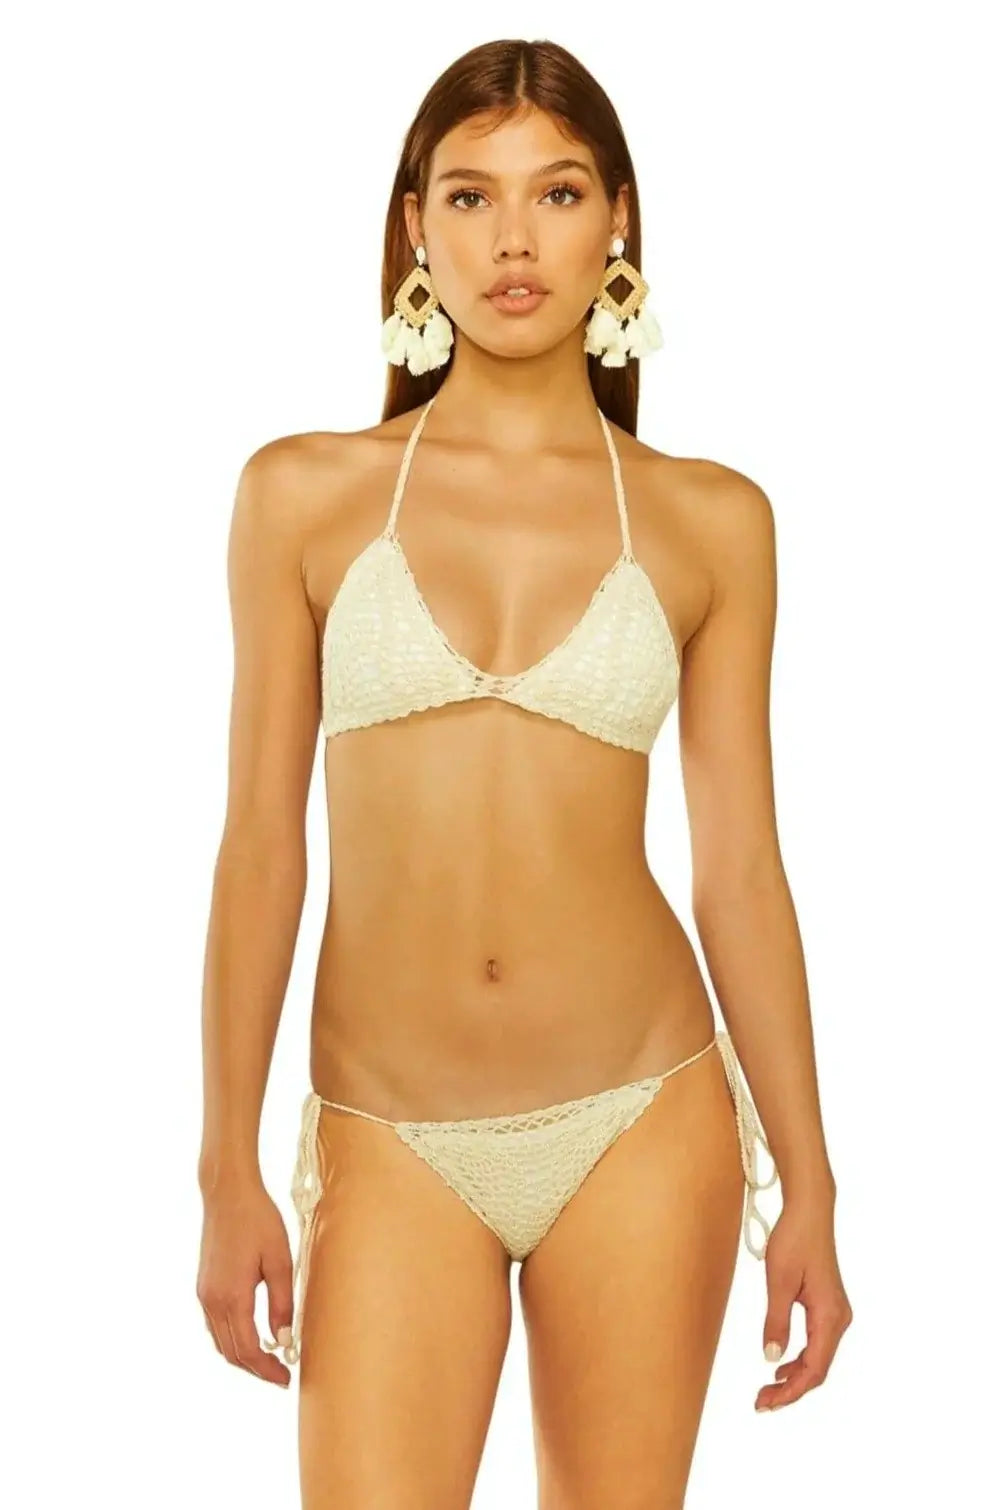 LA MEDUSE by Crool Greece 50 C Cup L crochet black nude bikini swimsui –  Jenifers Designer Closet